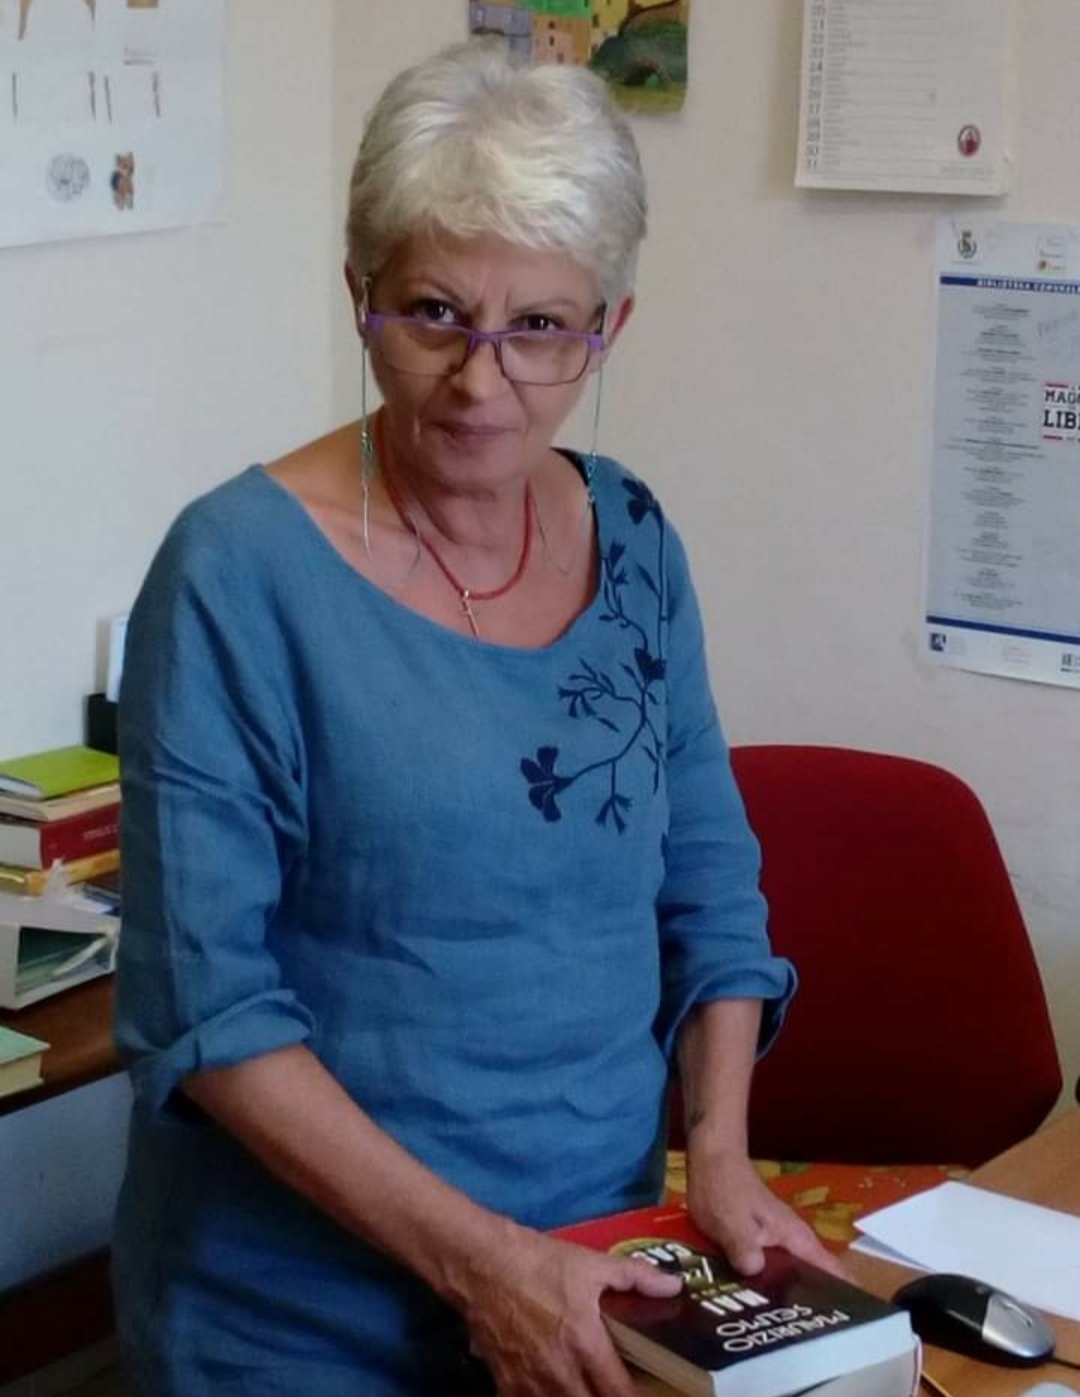 La bibliotecaria Andreina Cimmino è andata in pensione. “Avrà ancora tanto da darci”